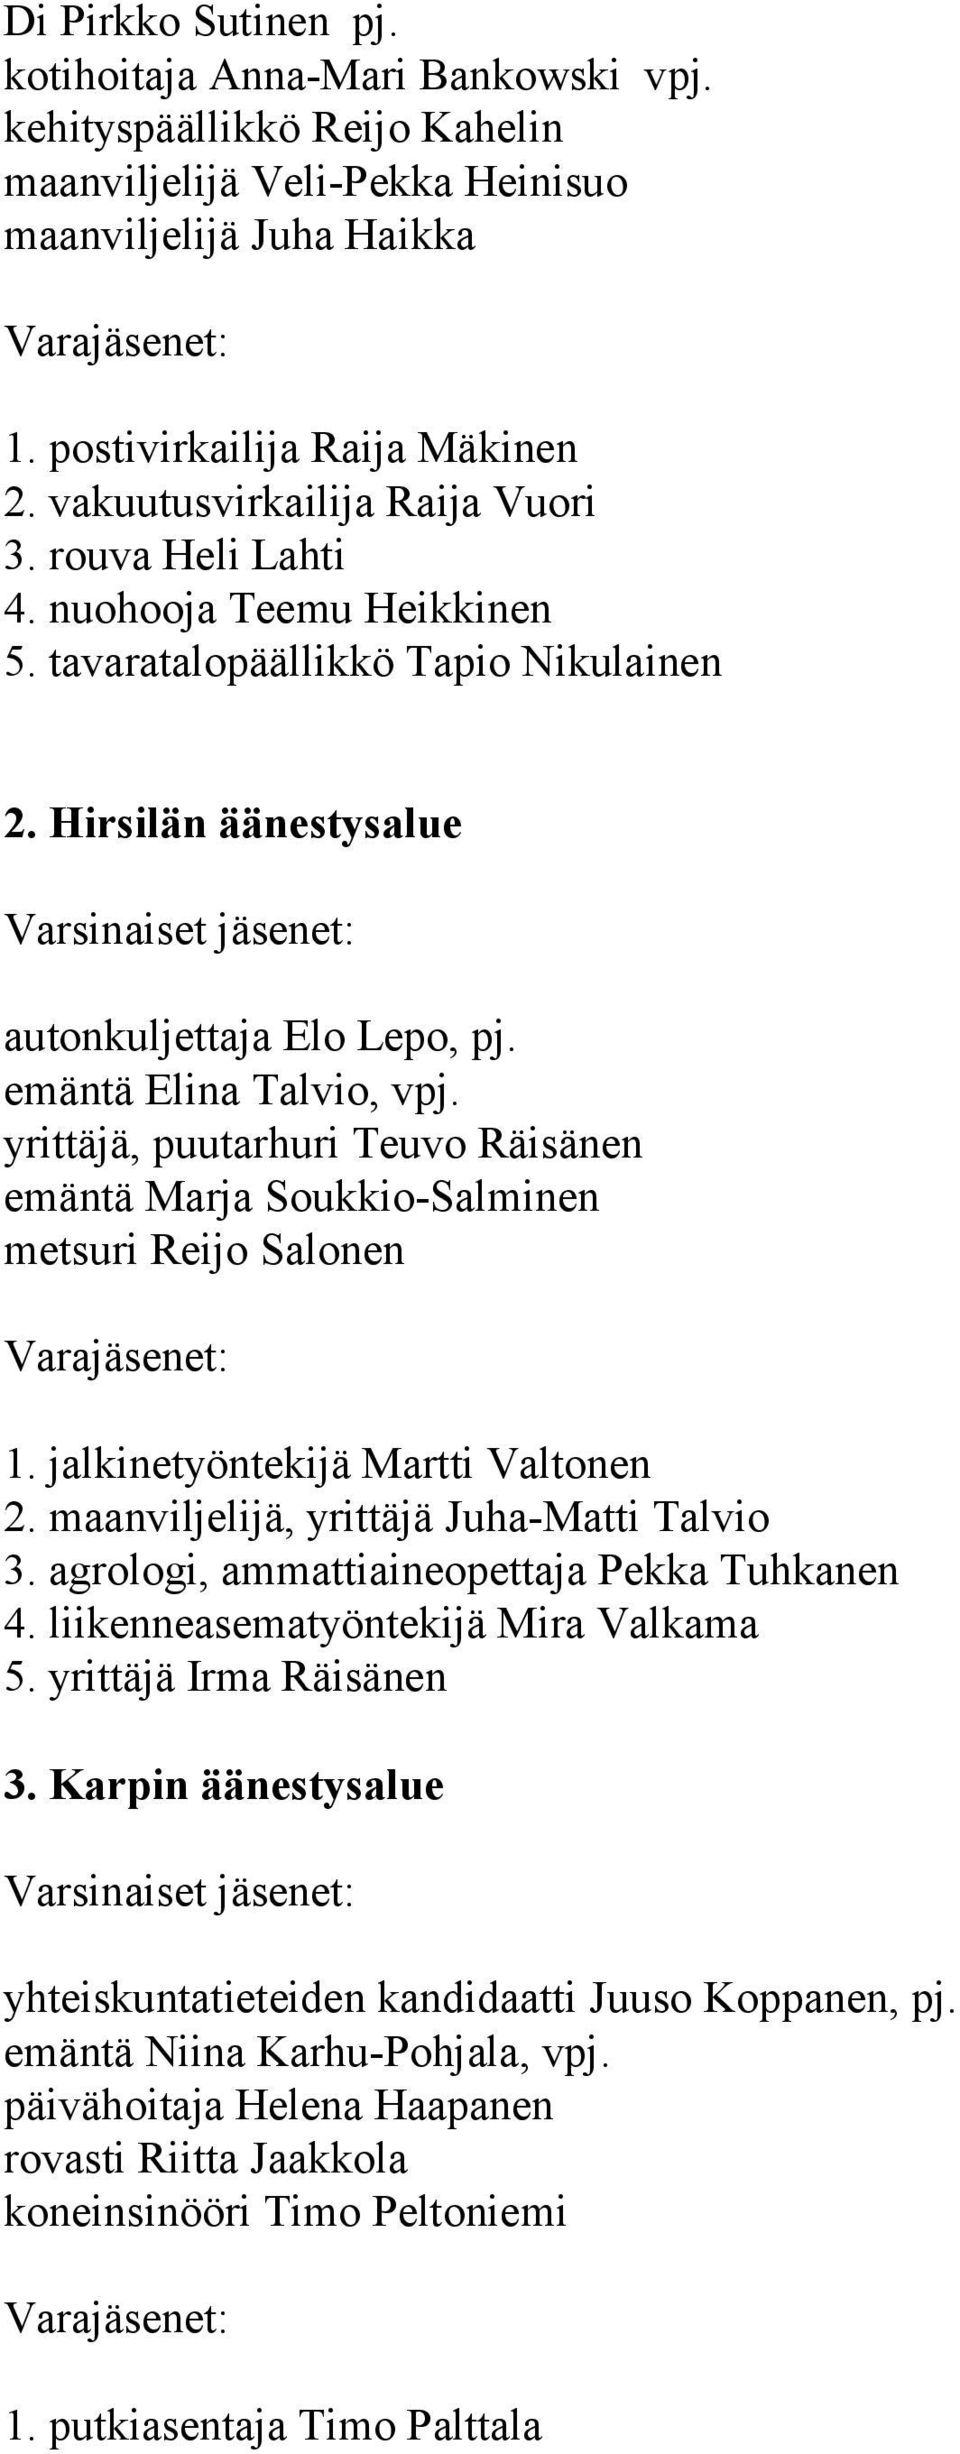 yrittäjä, puutarhuri Teuvo Räisänen emäntä Marja Soukkio-Salminen metsuri Reijo Salonen 1. jalkinetyöntekijä Martti Valtonen 2. maanviljelijä, yrittäjä Juha-Matti Talvio 3.